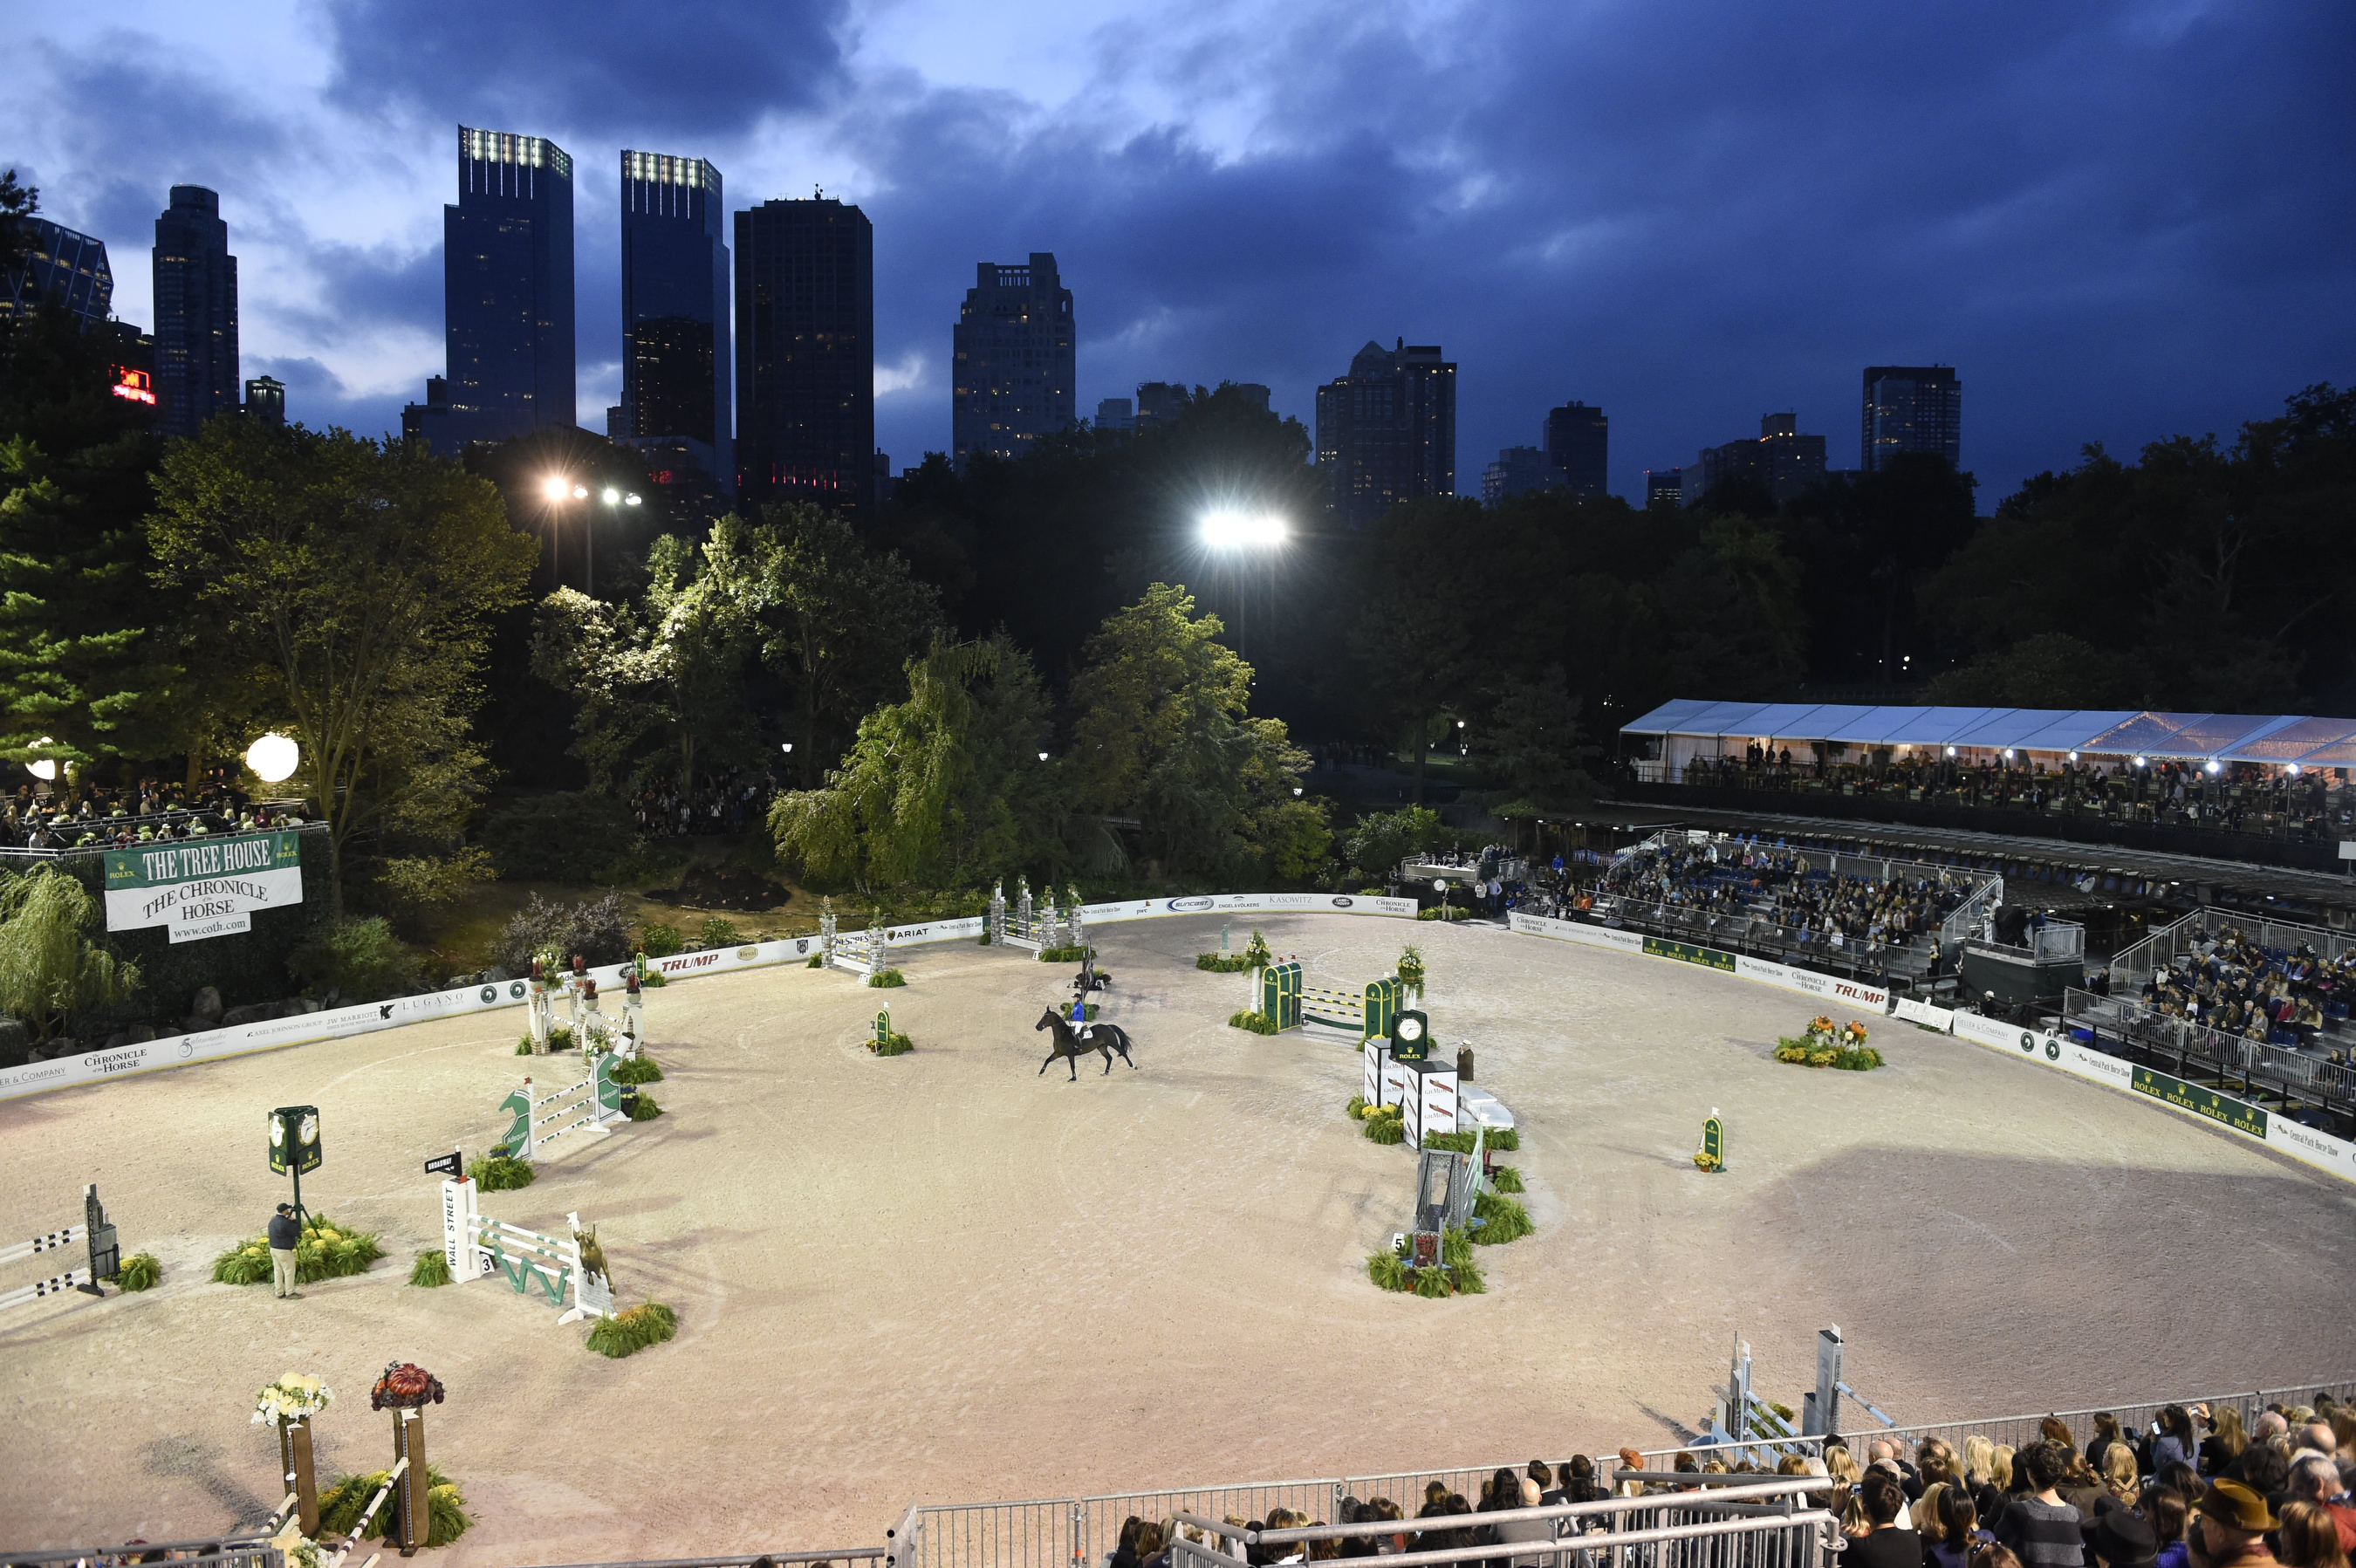 Rolex Central Park Horse Show returns 